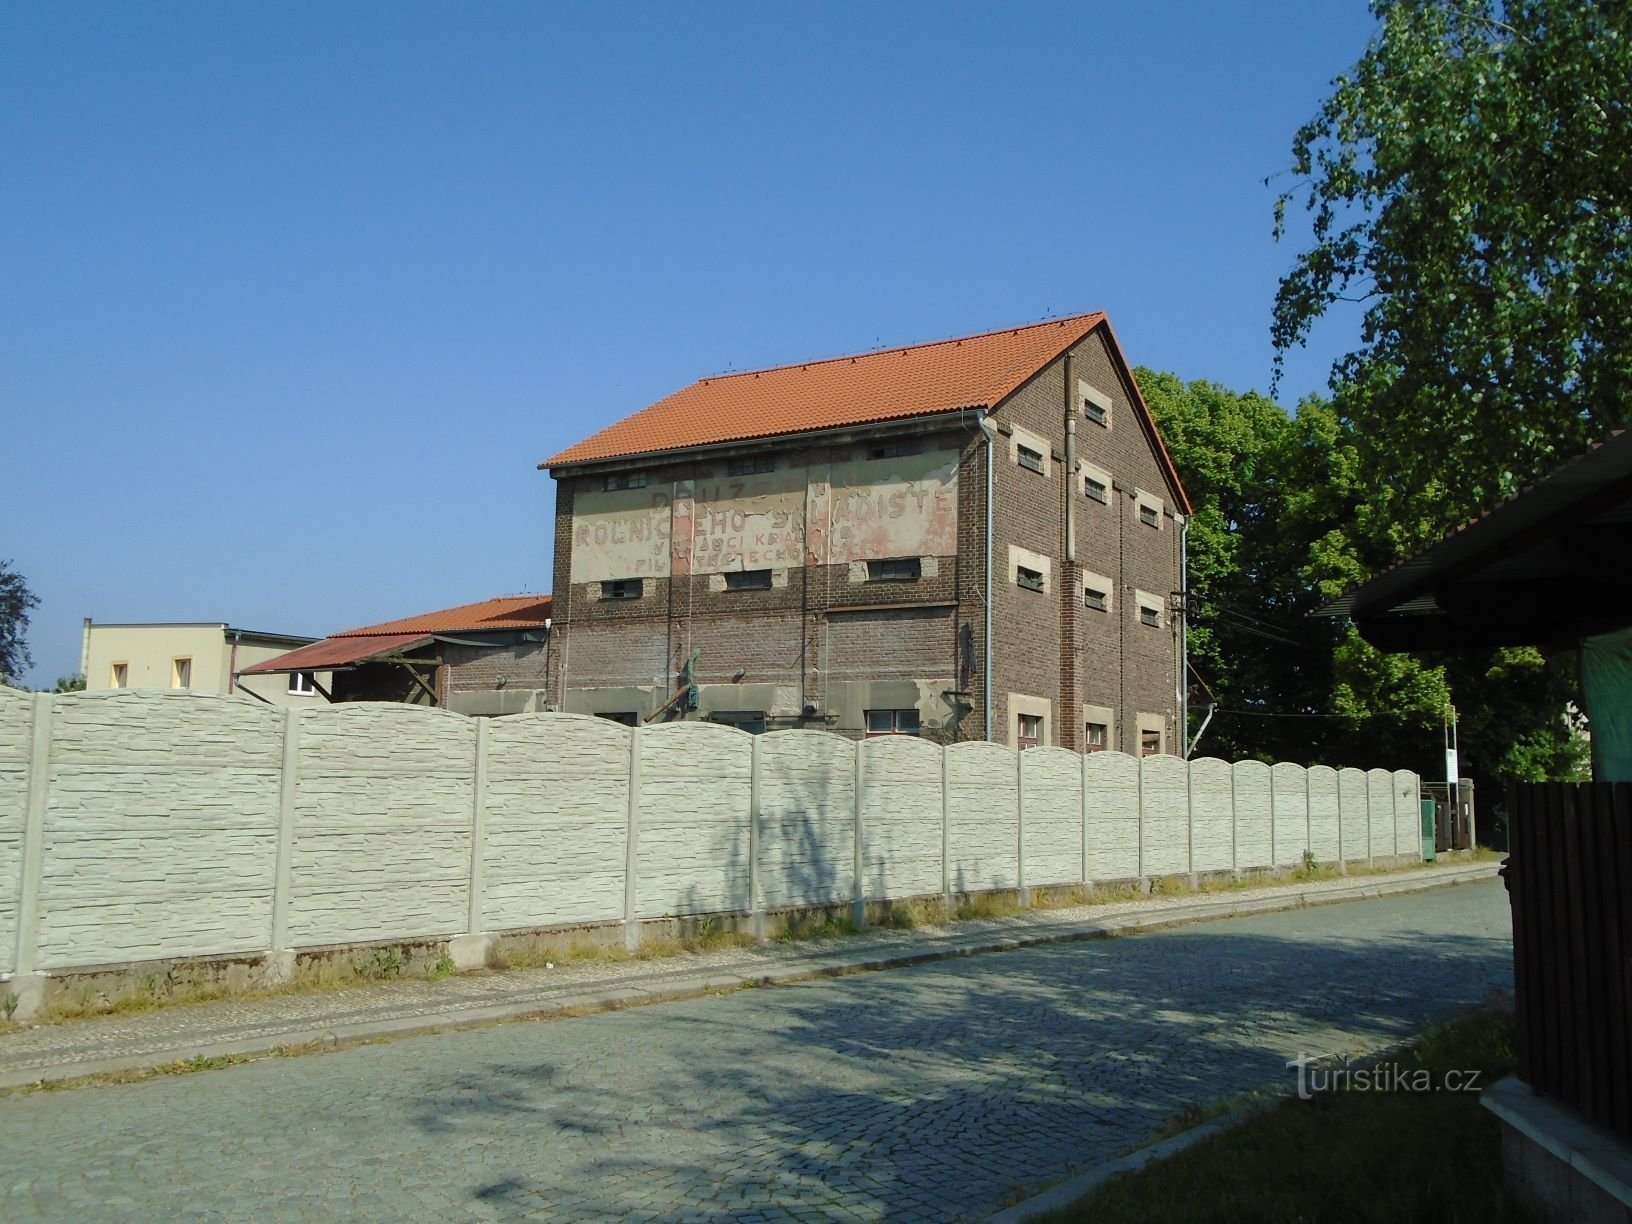 Het gebouw van het voormalige boerderijmagazijn (Třebechovice pod Orebem, 12.5.2018 mei XNUMX)